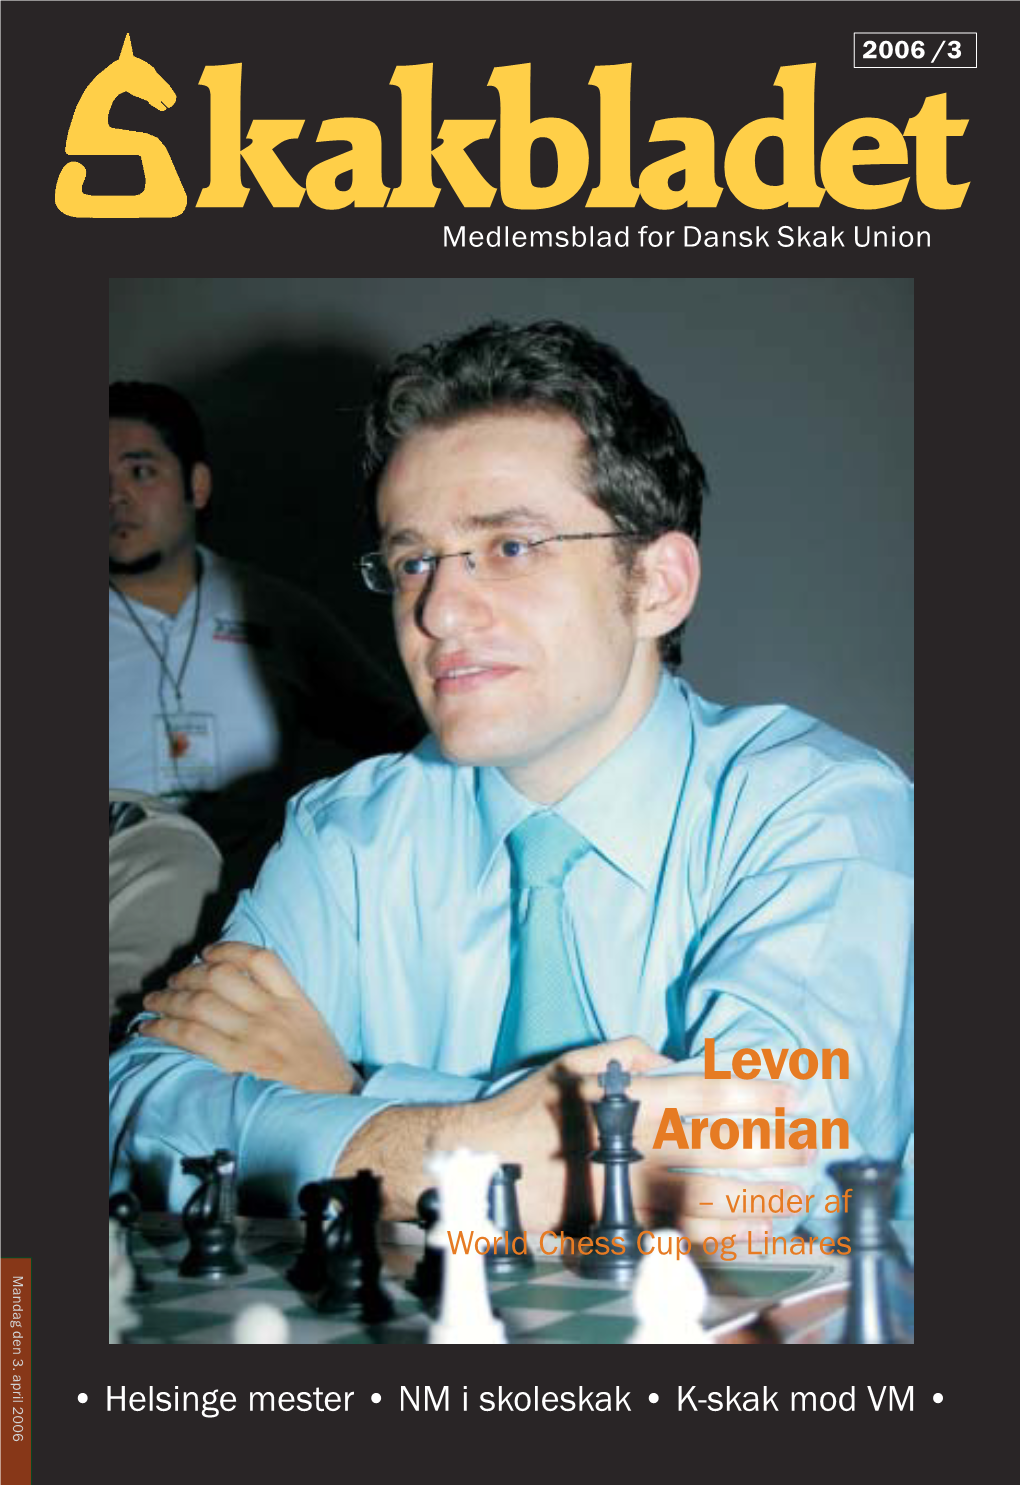 Levon Aronian – Vinder Af World Chess Cup Og Linares Mandag Den 3